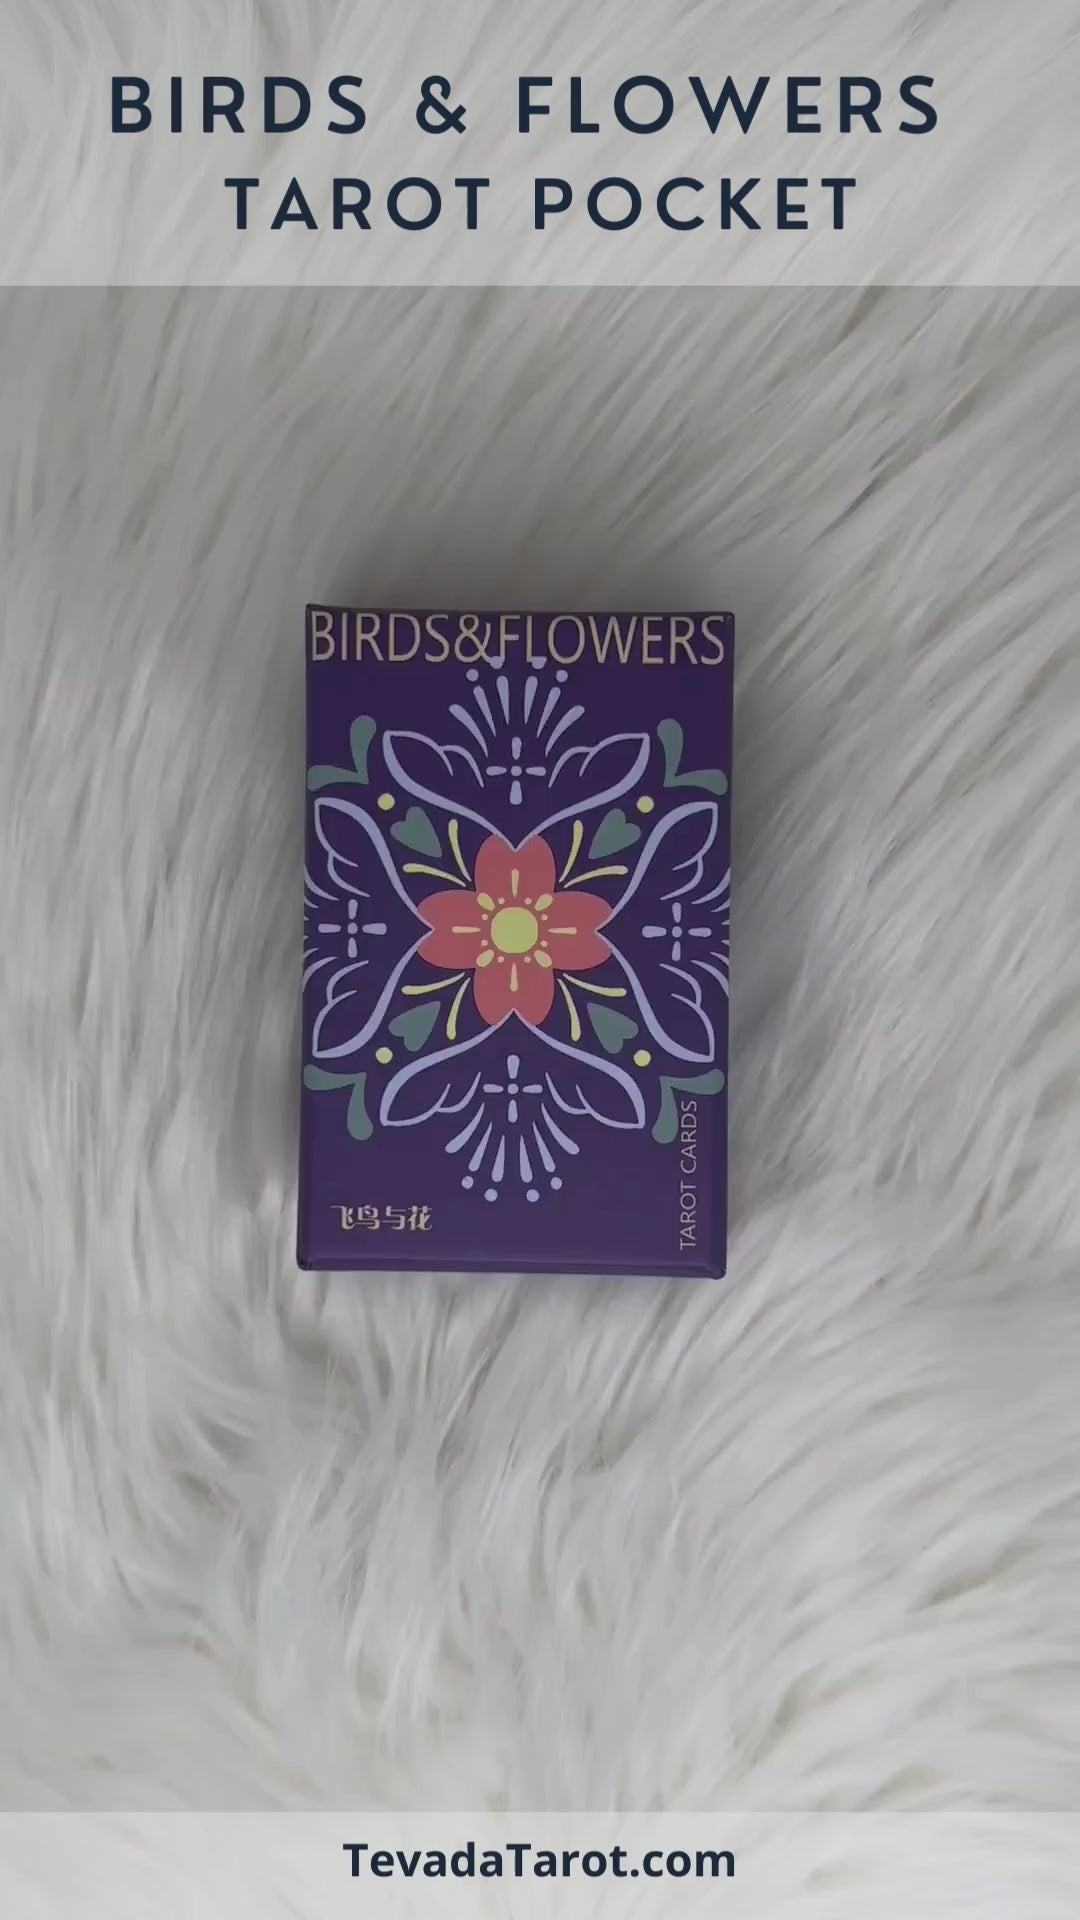 Birds & Flowers Tarot POCKET